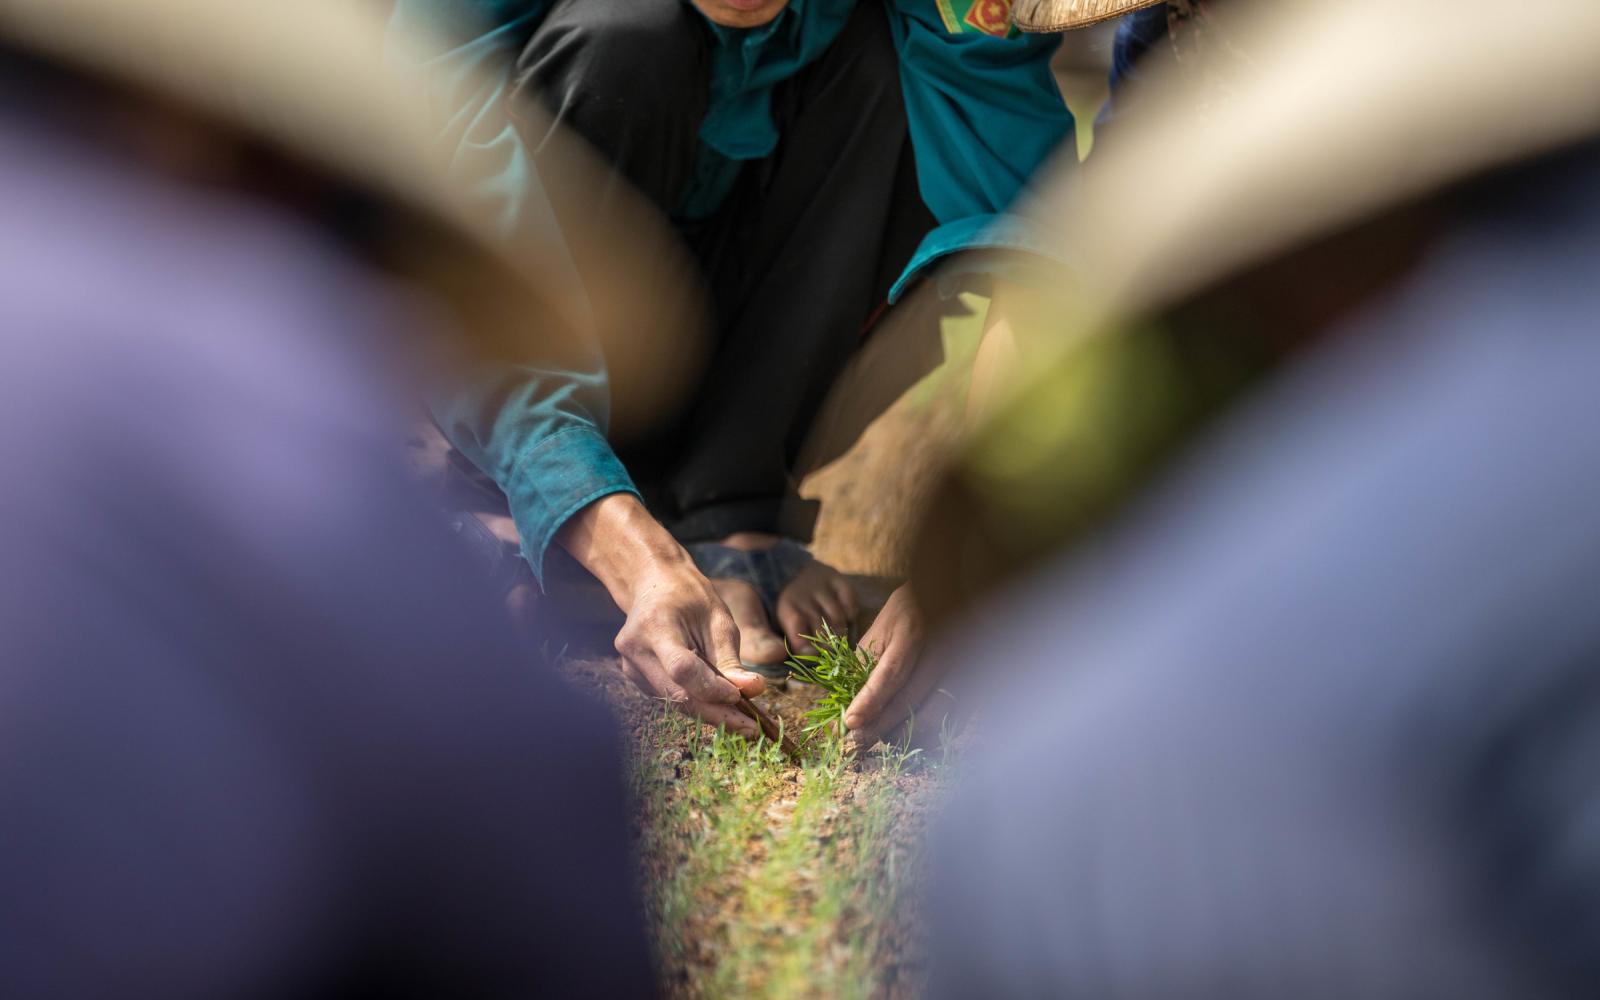 La pépinière de jeunes plants de la compagnie forestière Tien Phong, ville de Huong Thuy, Vietnam. Les semis sont produits à partir de cultures de tissus végétaux par micropropagation.